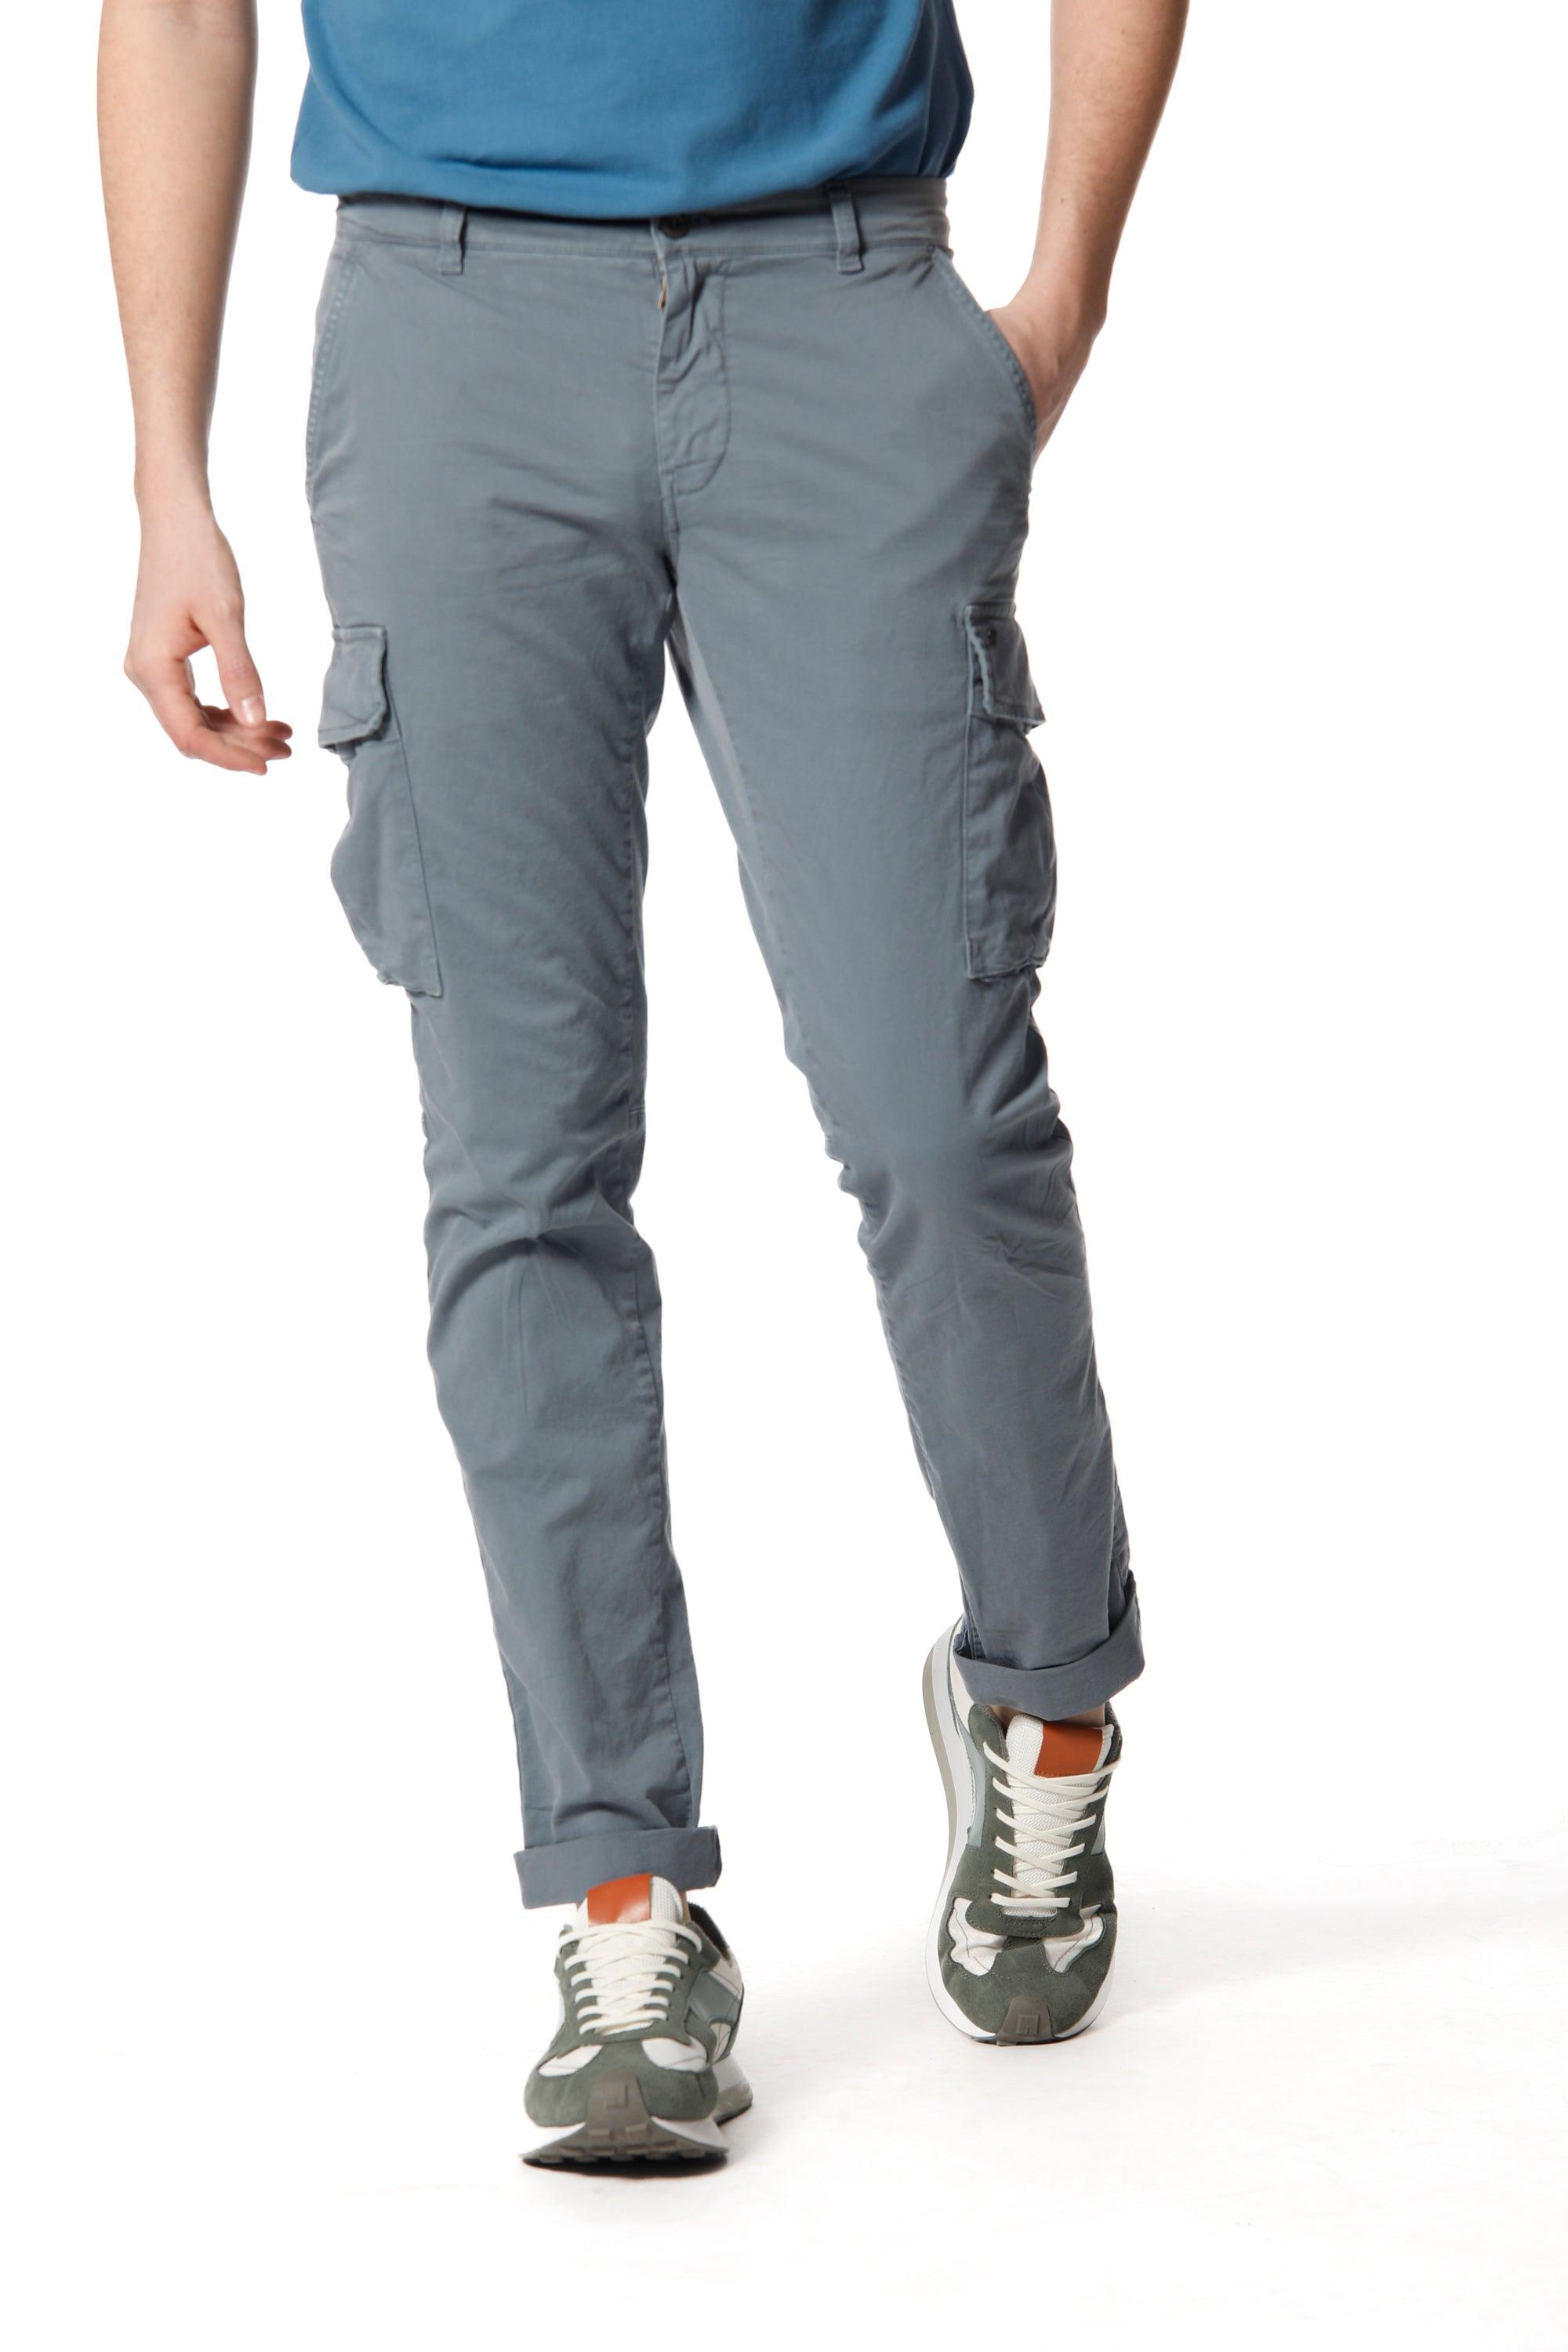 Chile pantalone cargo uomo in twill di cotone stretch extra slim fit ① - Mason's